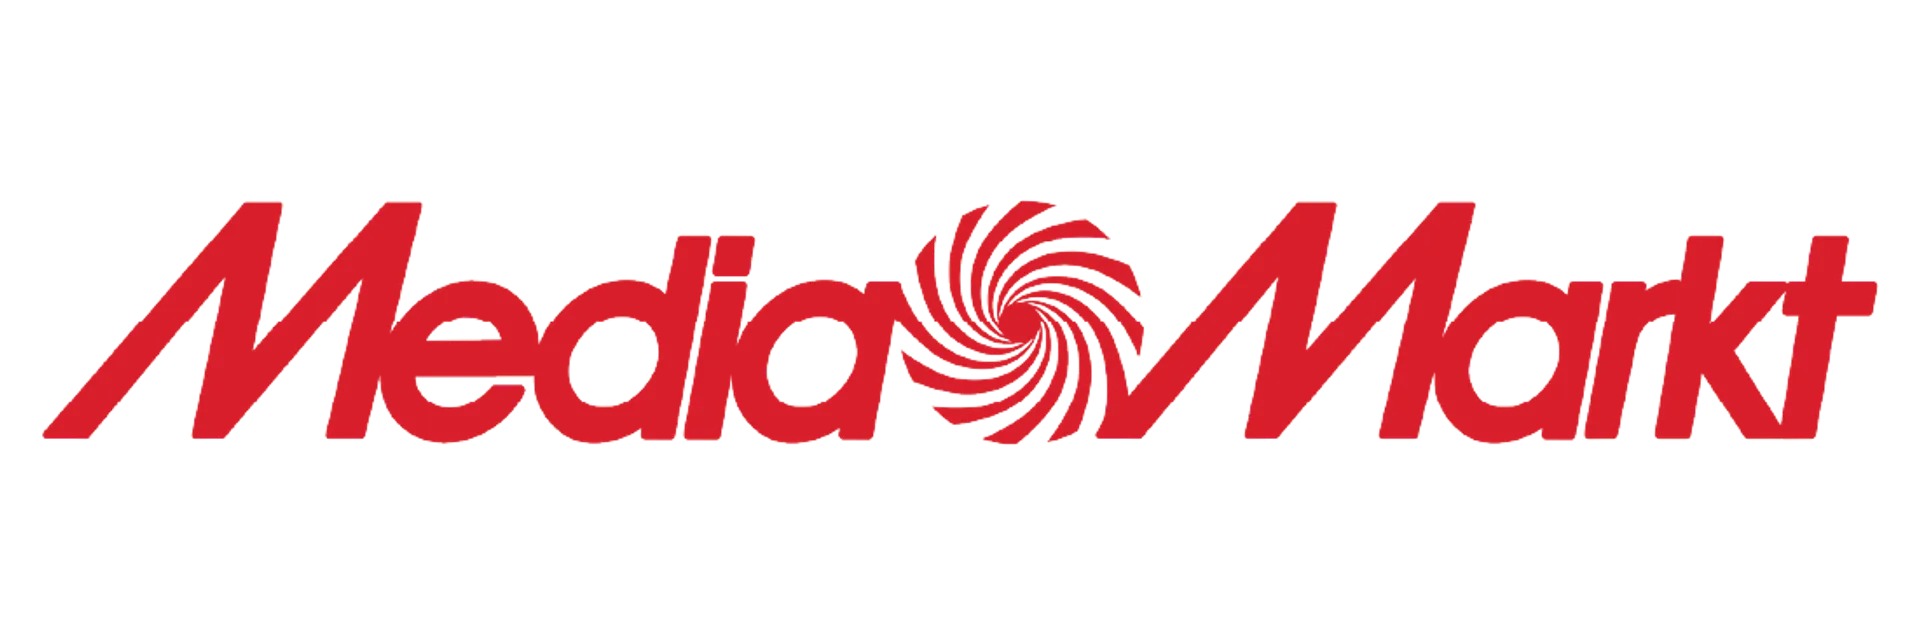 MEDIAMARKT logo